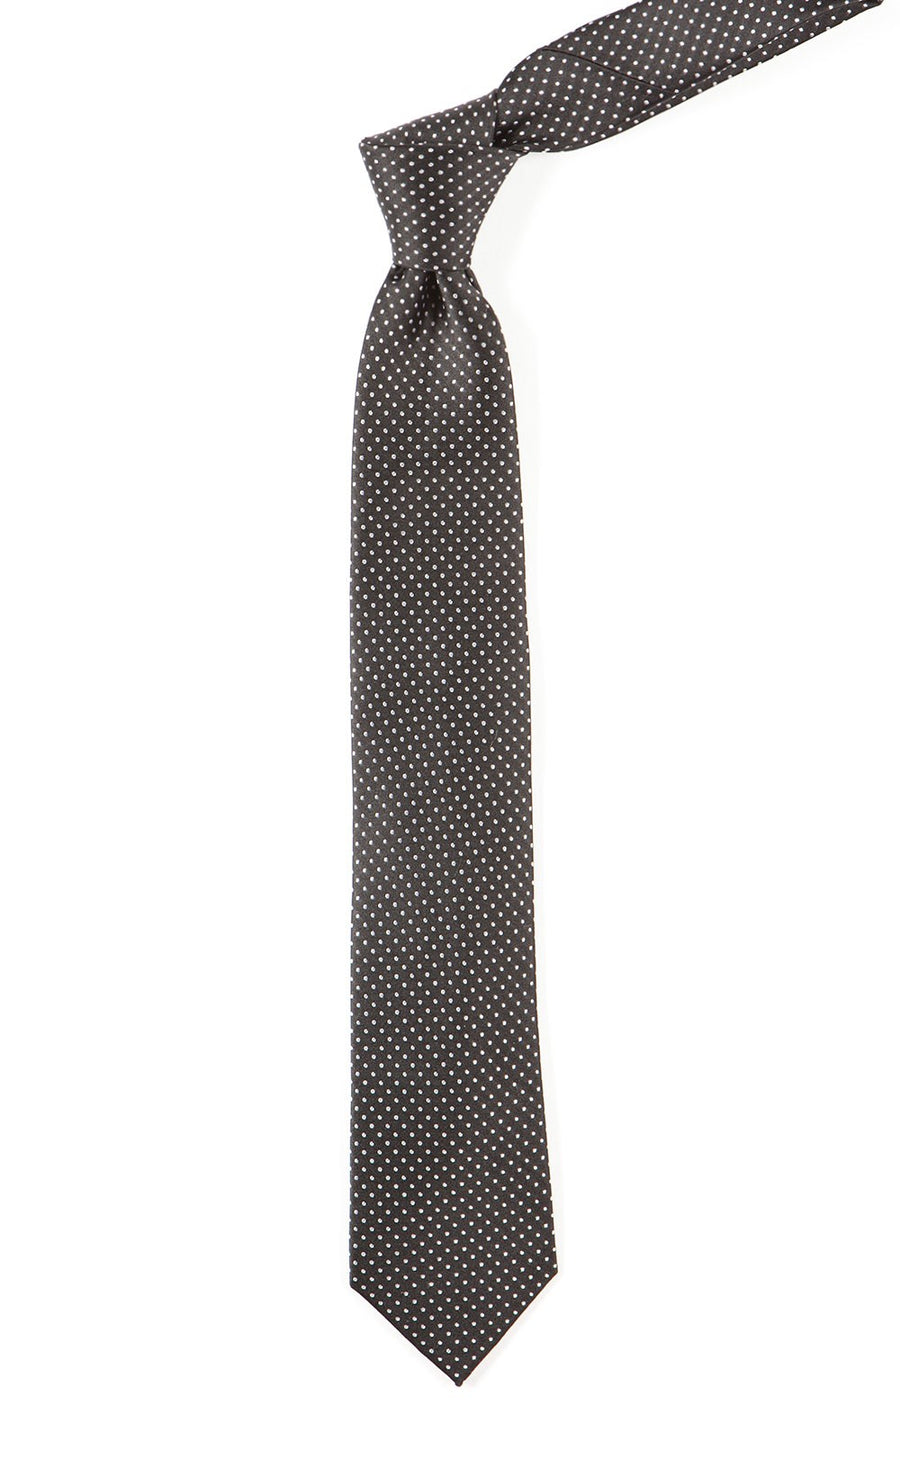 Pindot Black Tie | Silk Ties | Tie Bar